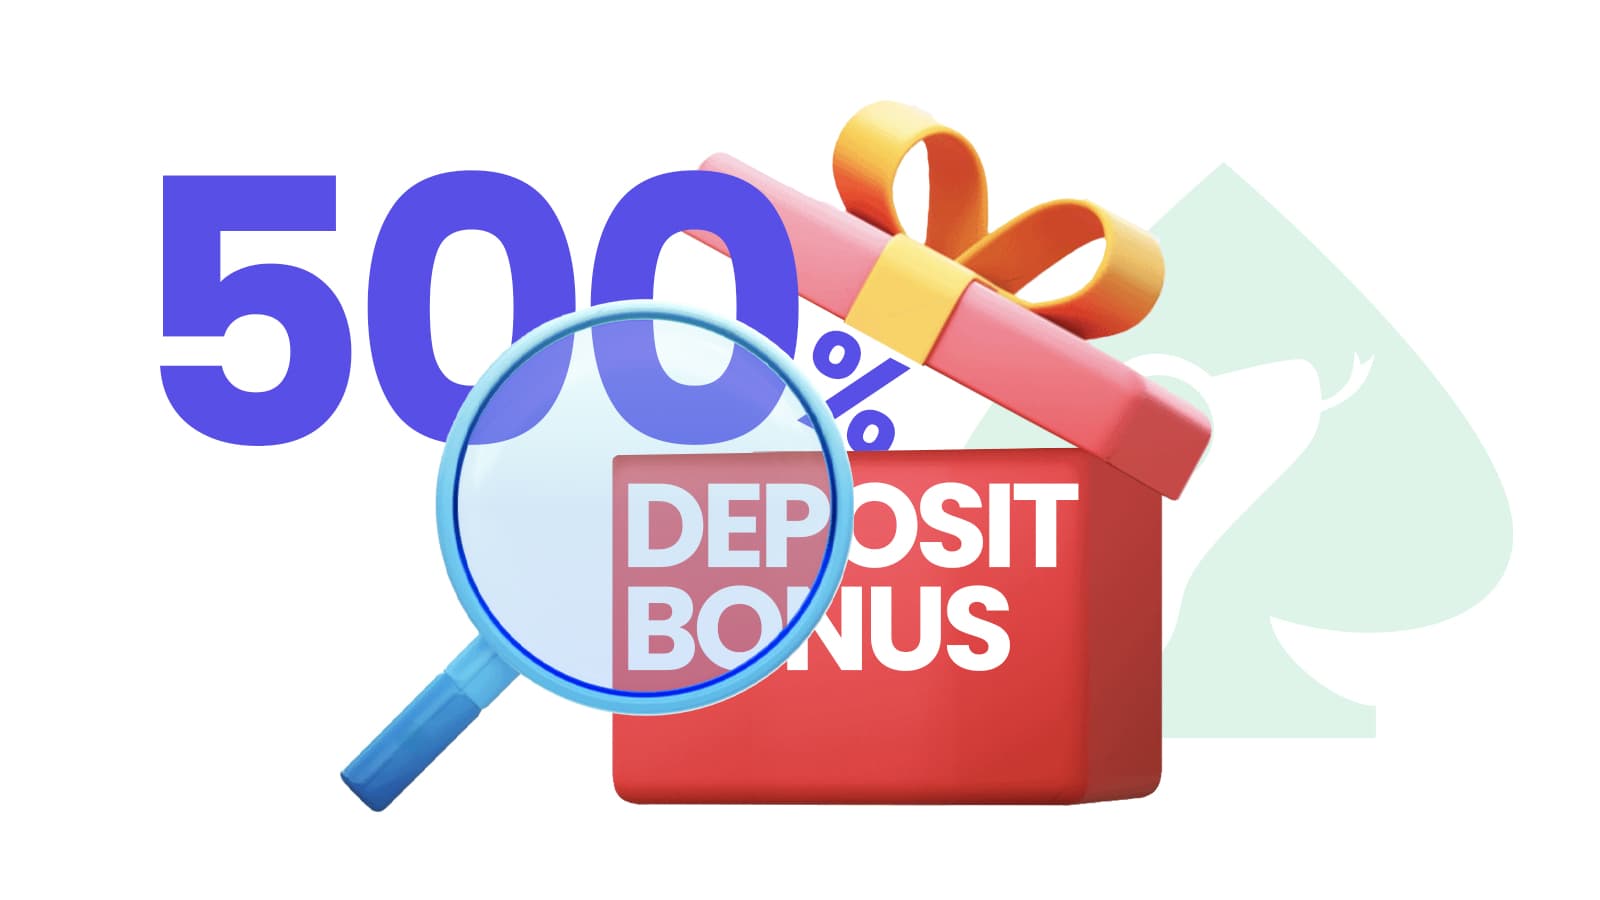 500 bonus deposit online casino